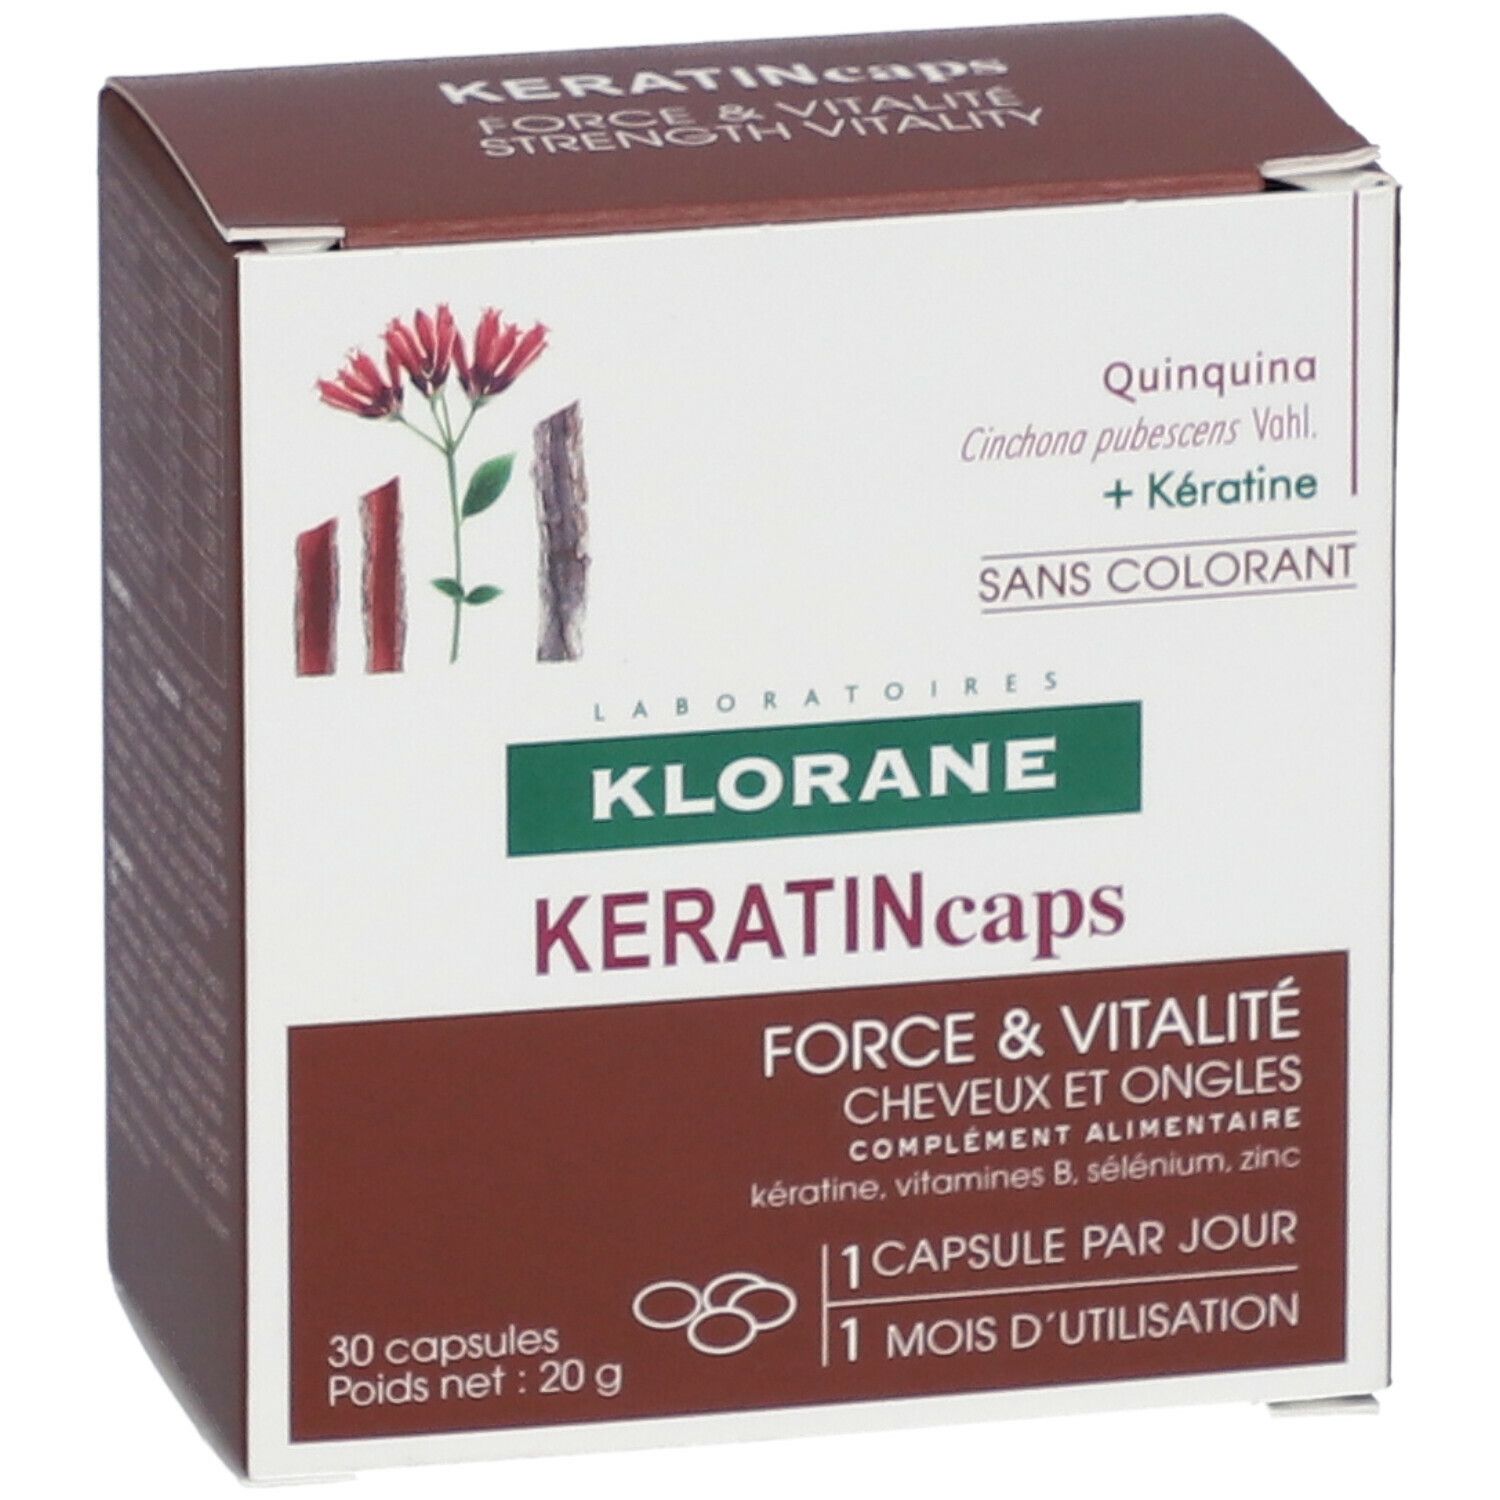 KLORANE KeratinCaps - Complément alimentaire